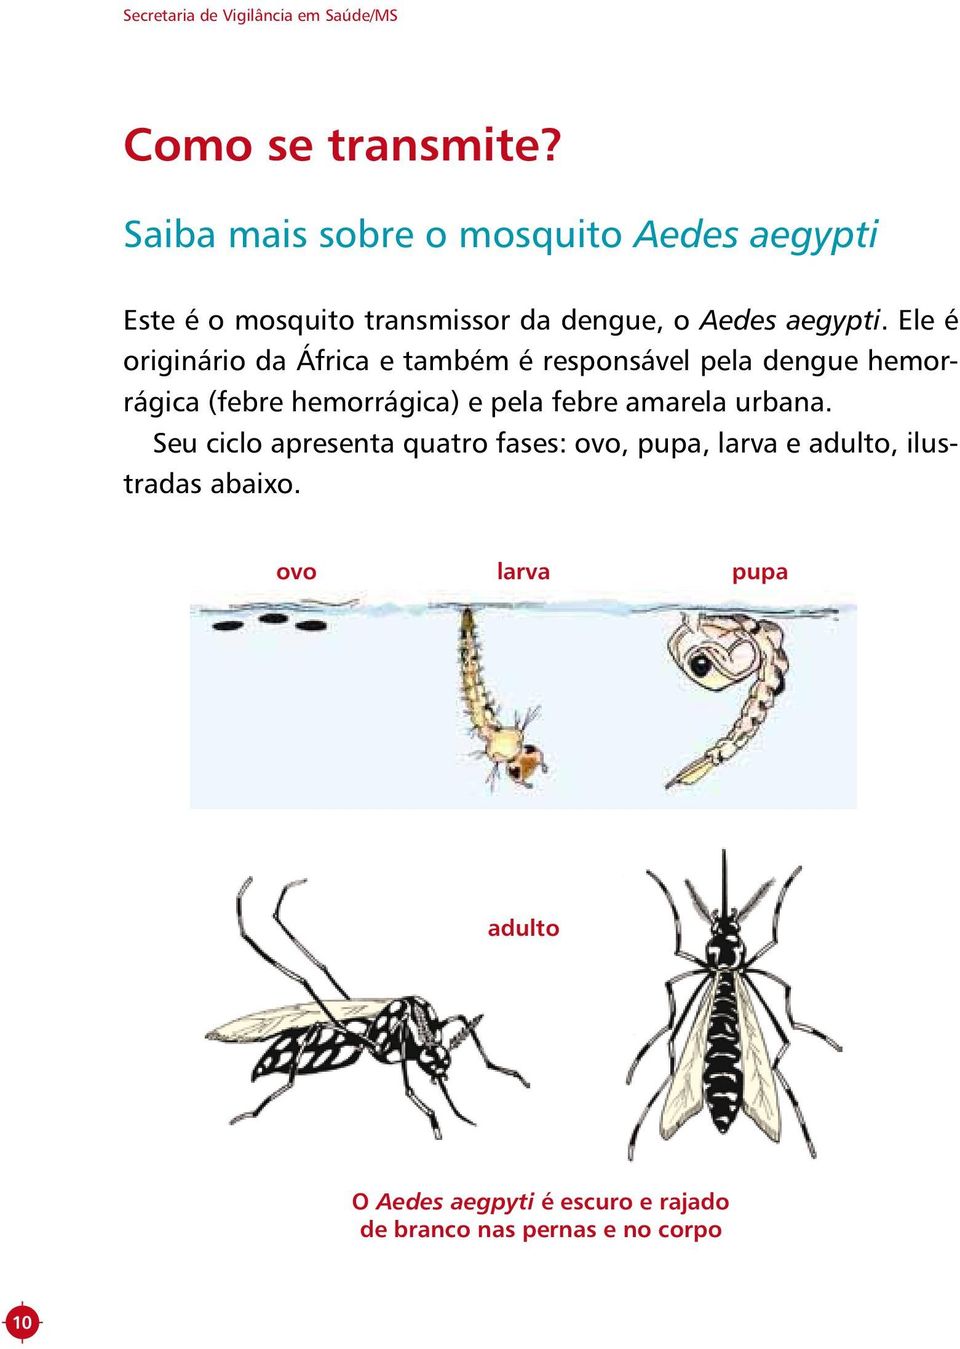 Ele é originário da África e também é responsável pela dengue hemorrágica (febre hemorrágica) e pela febre